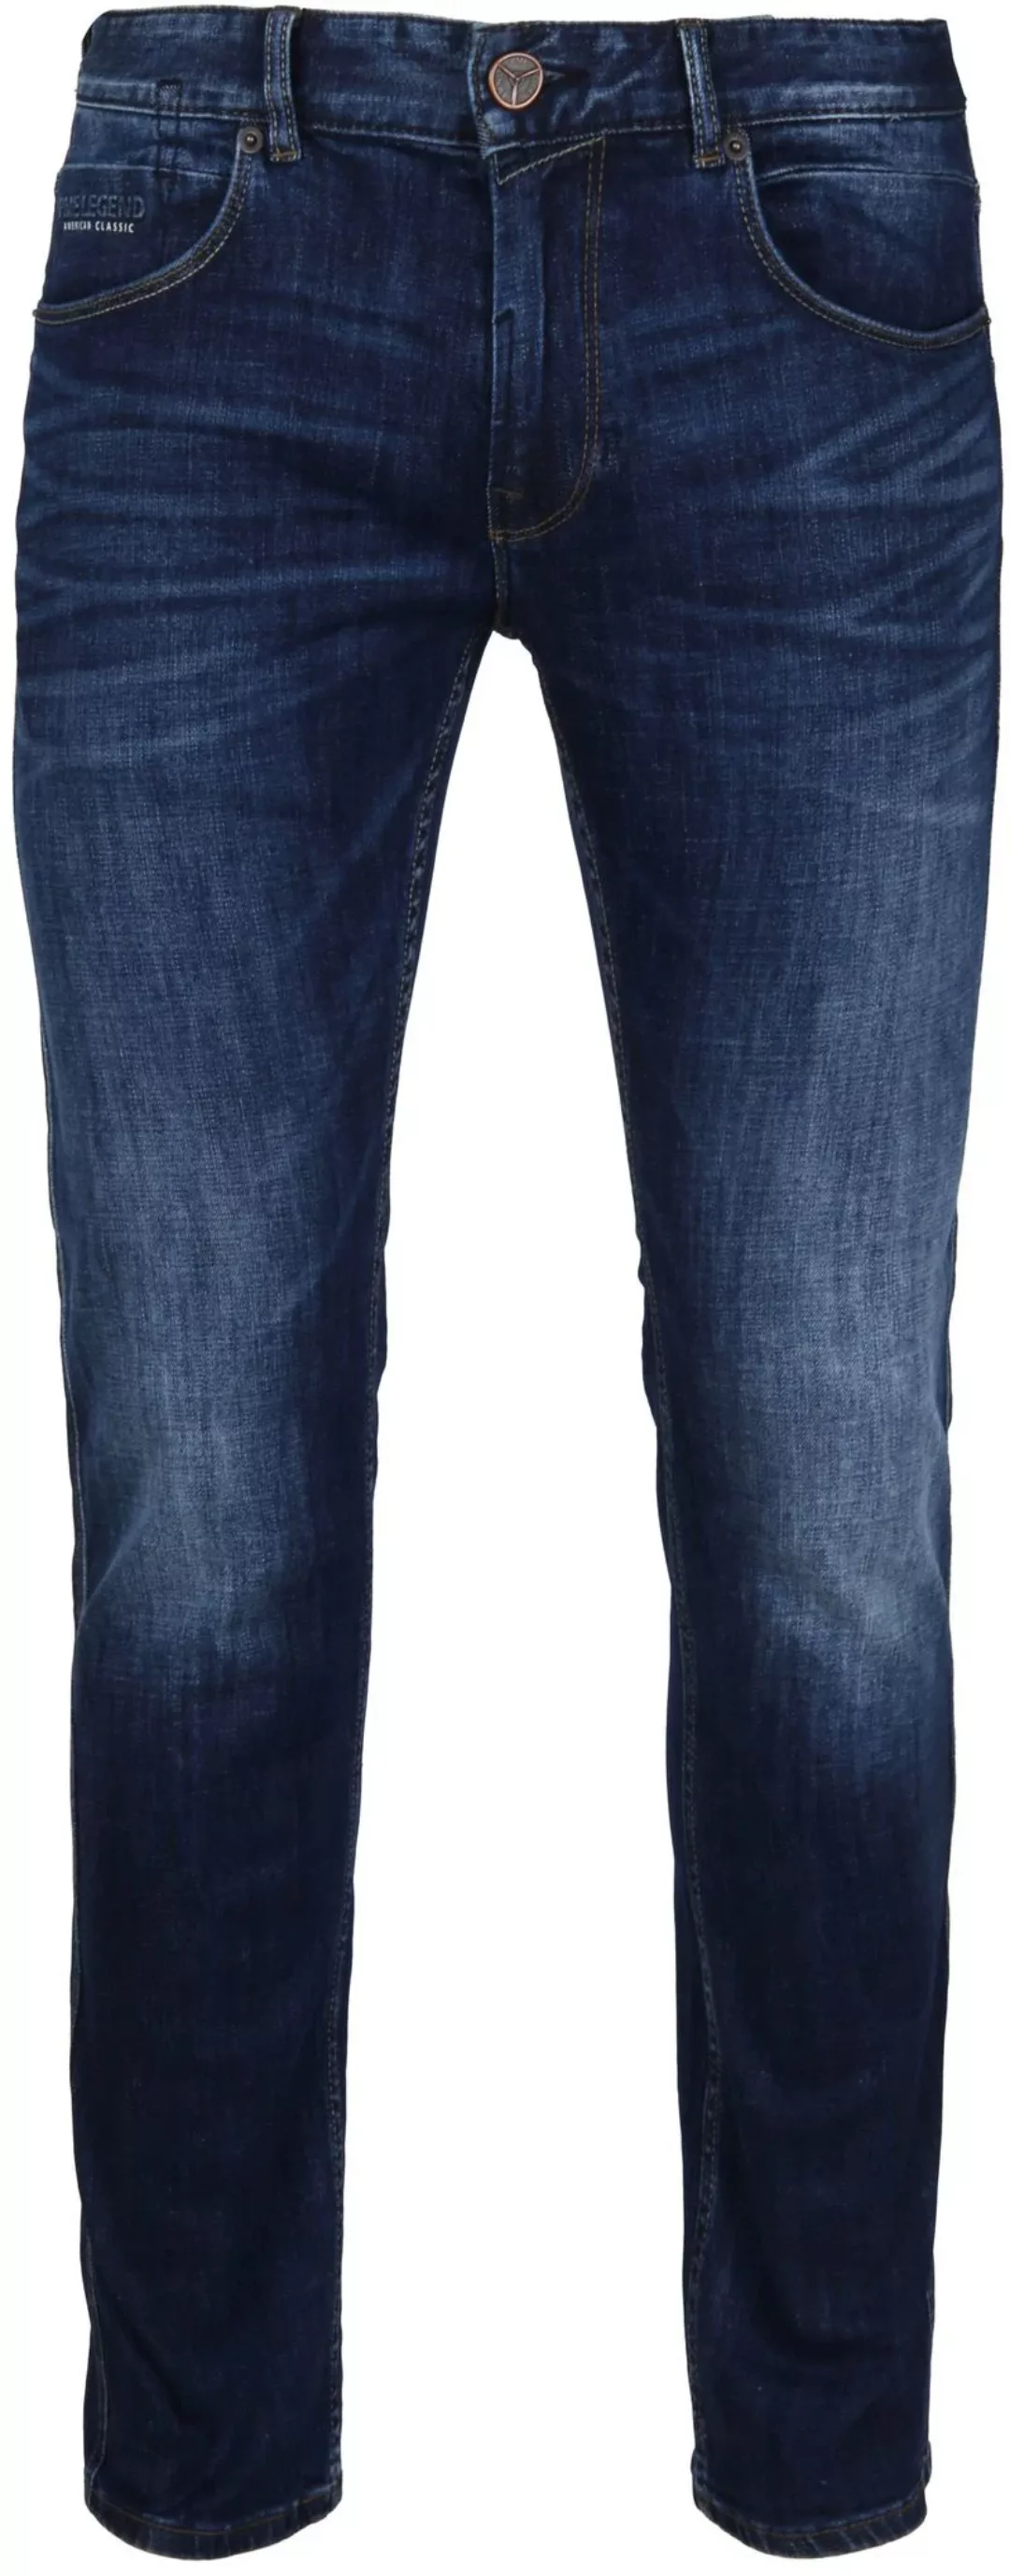 PME Legend Nightflight Jeans Dunkelblau - Größe W 38 - L 38 günstig online kaufen